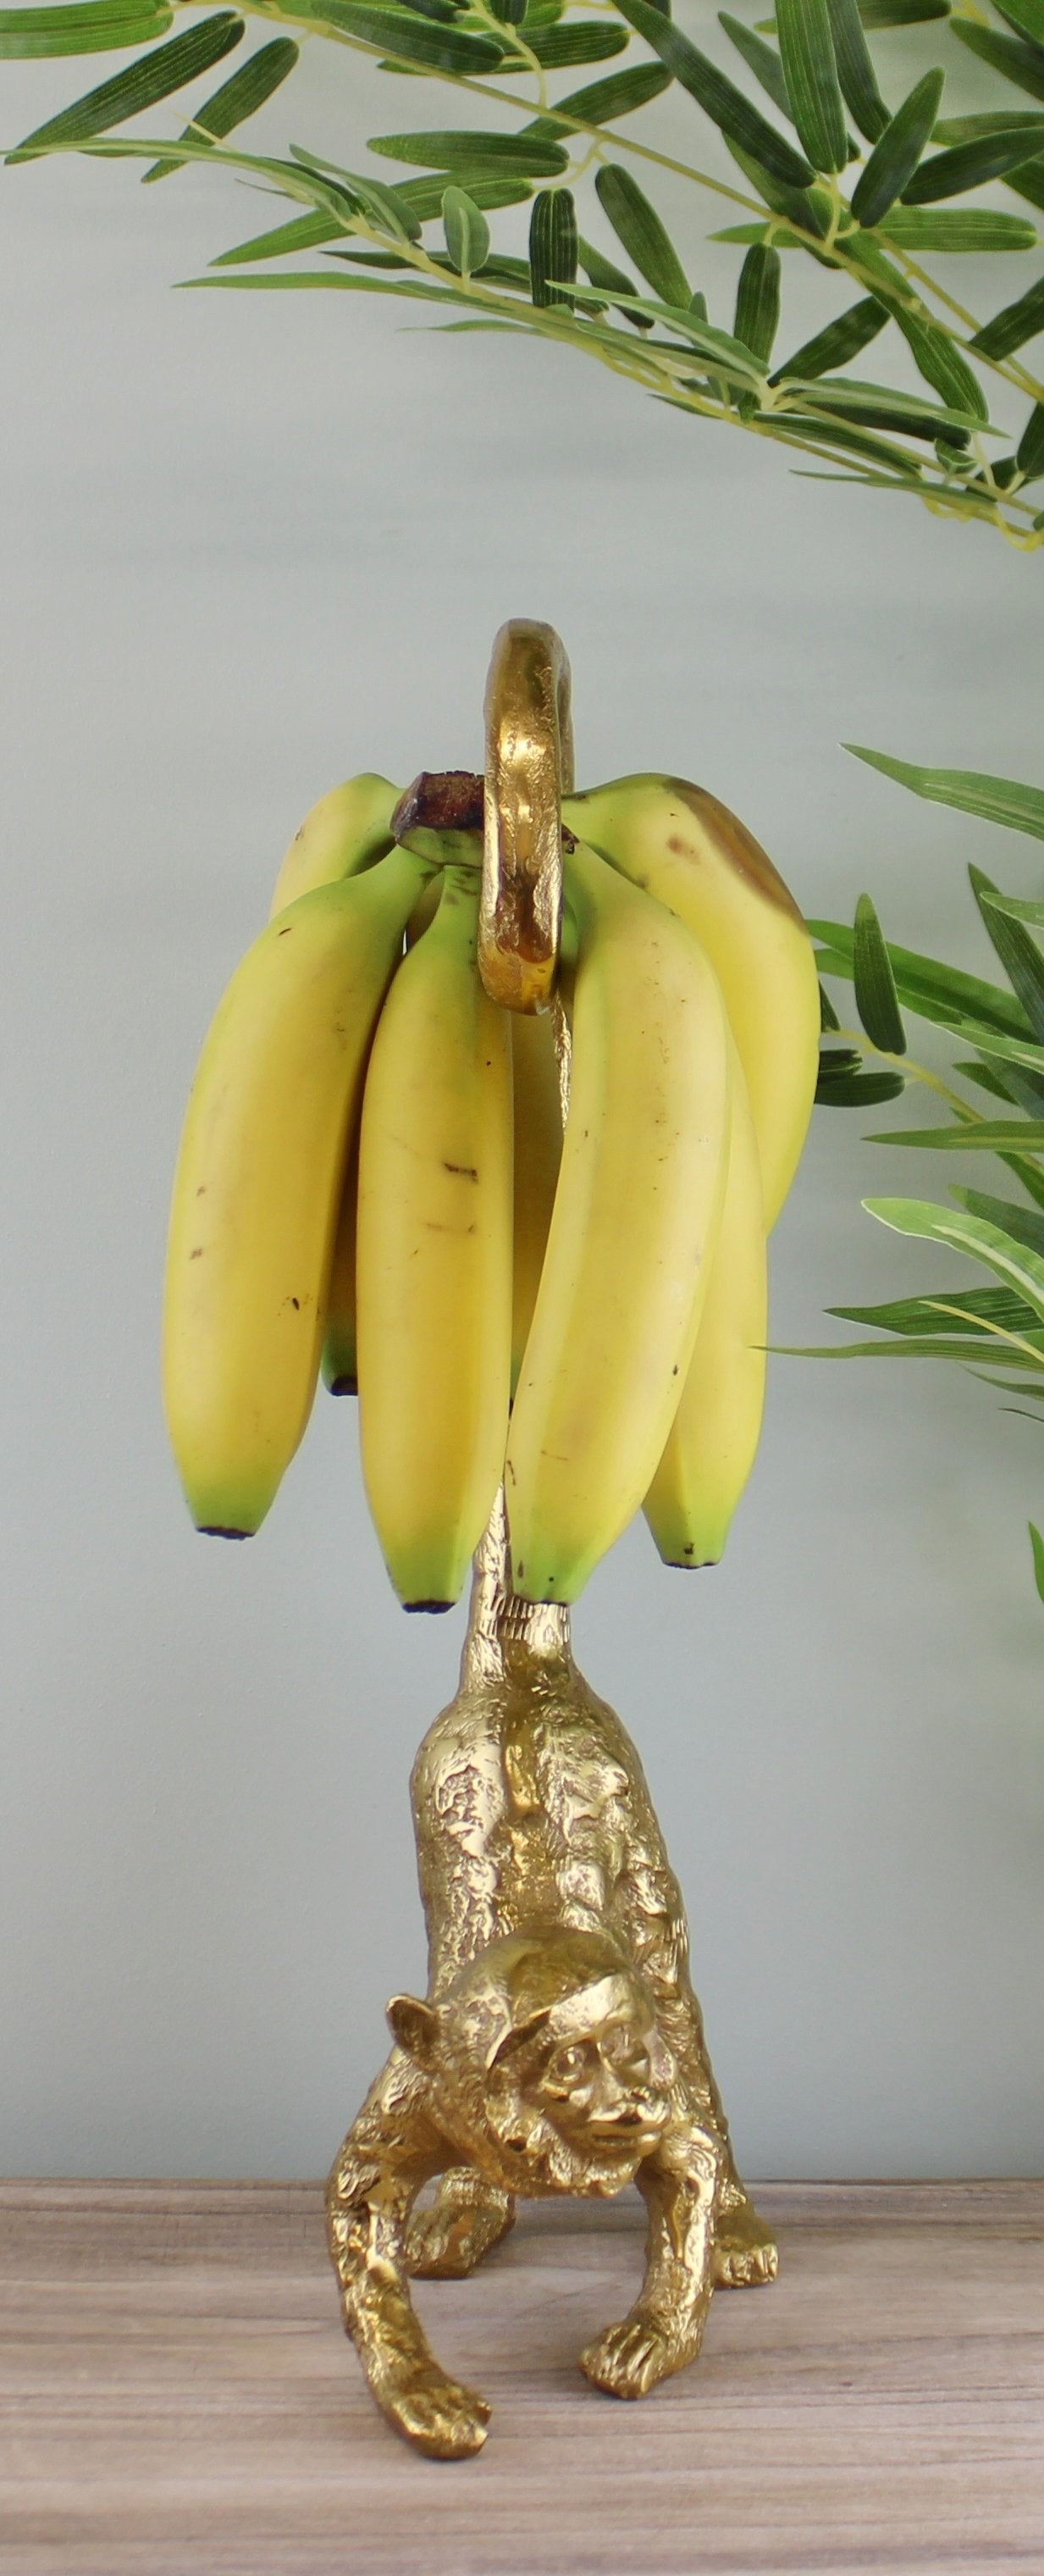 Large Gold Metal Monkey Banana Holder